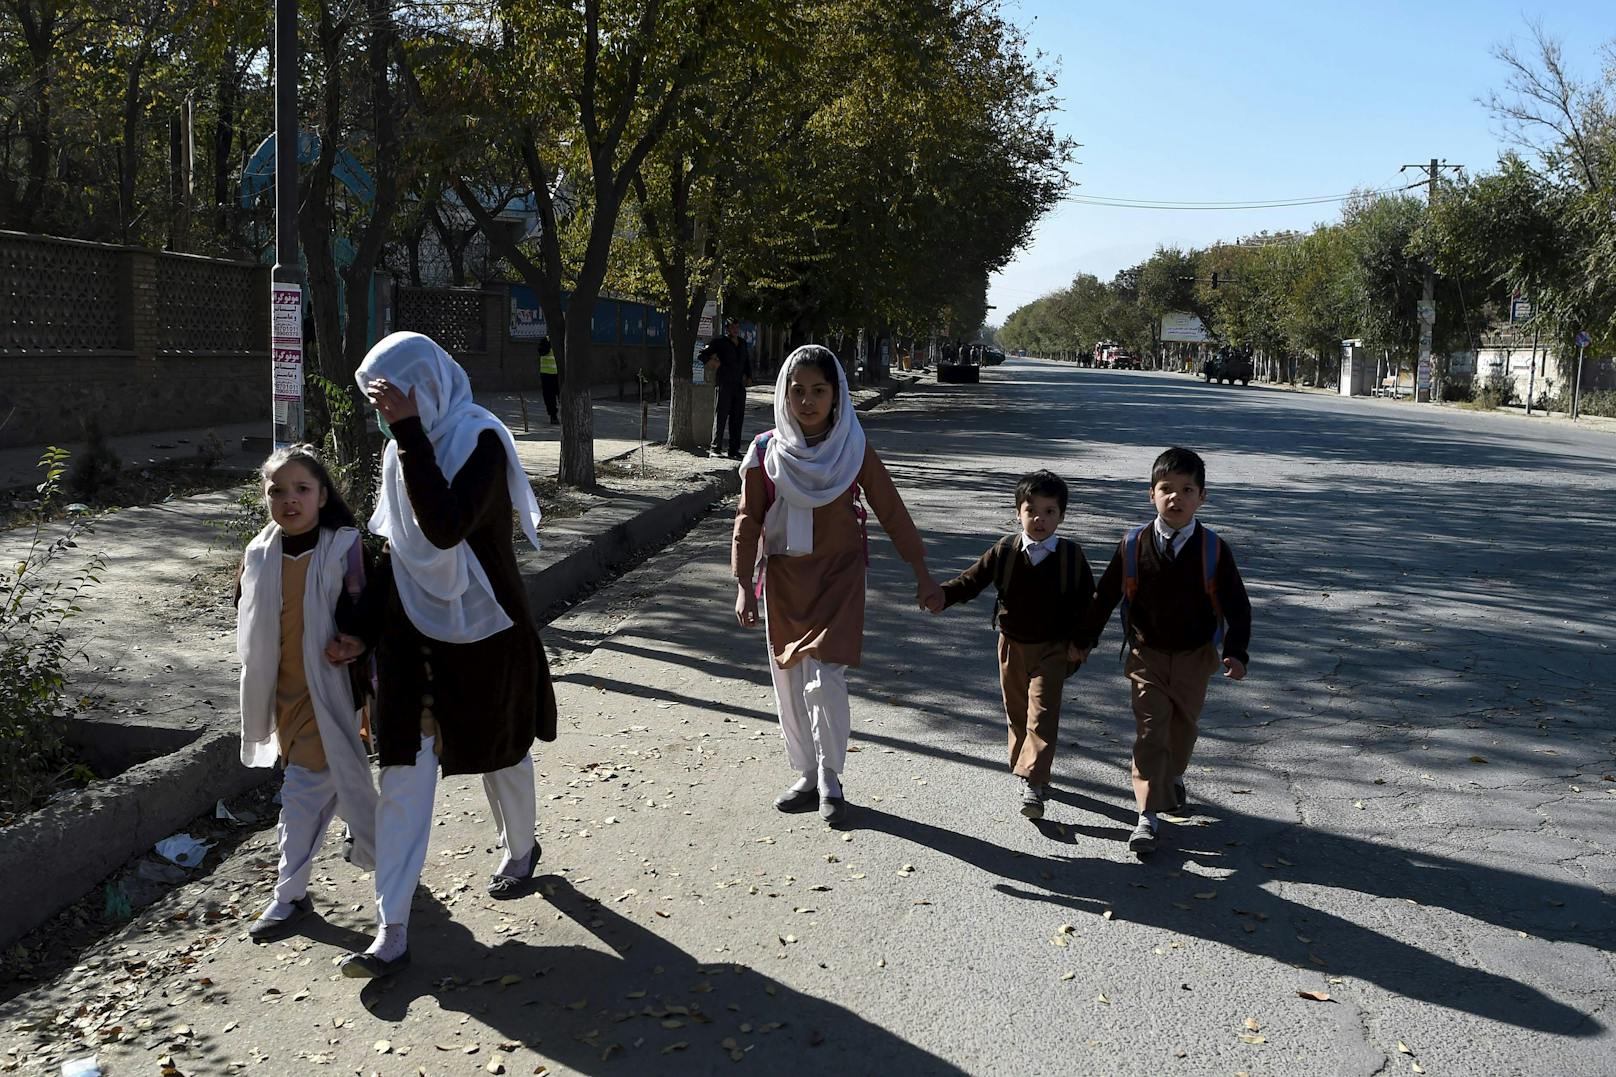 Bei einem Angriff auf das Gelände der Universität von Kabul sind nach Angaben des afghanischen Innenministeriums mindestens 19 Menschen getötet und 22 weitere verletzt worden.